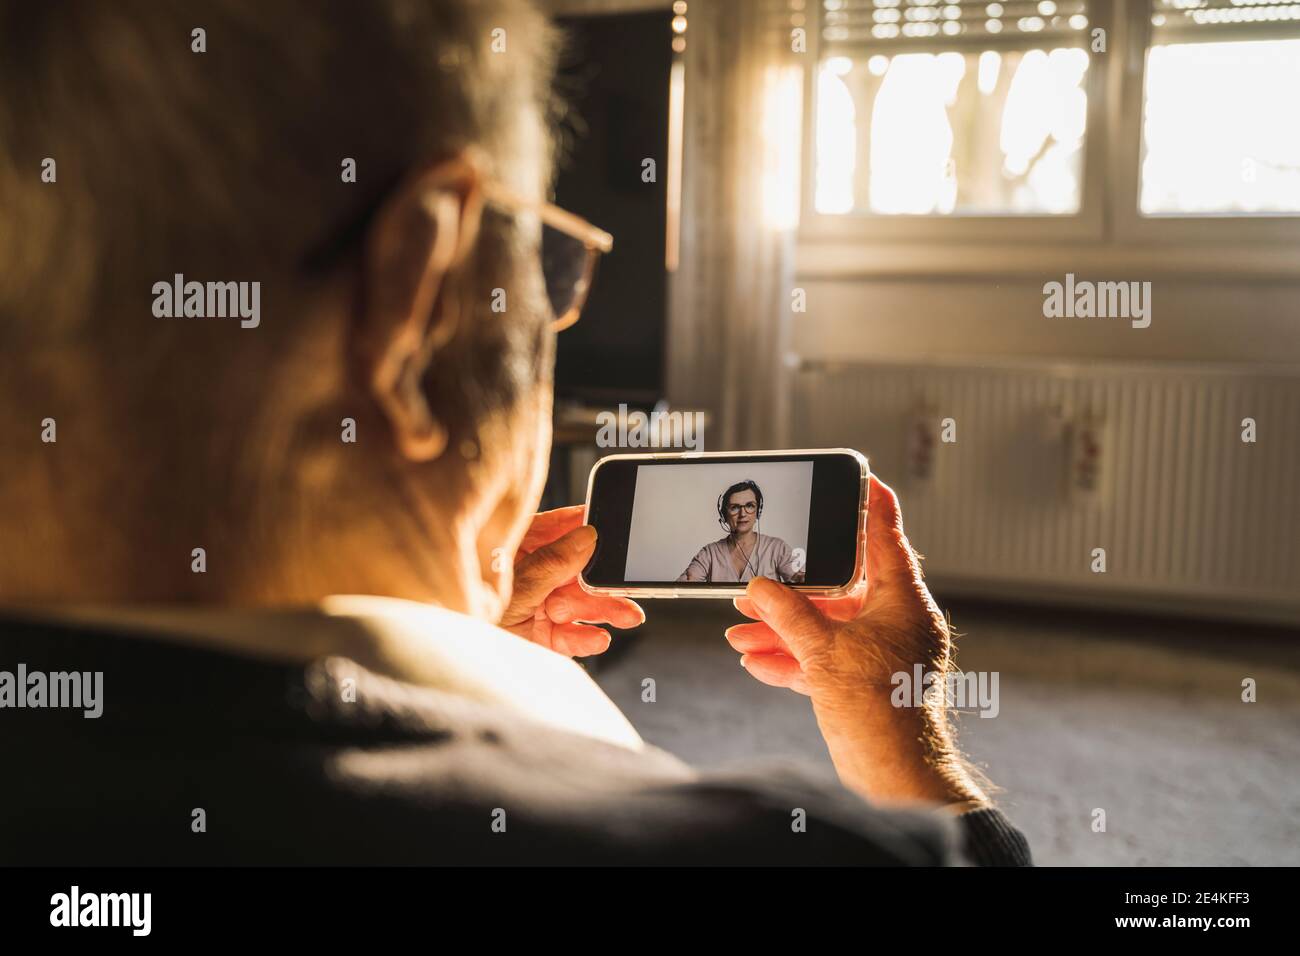 Uomo anziano che prende il consiglio dal medico generale femminile sul video chiama tramite smartphone in salotto Foto Stock